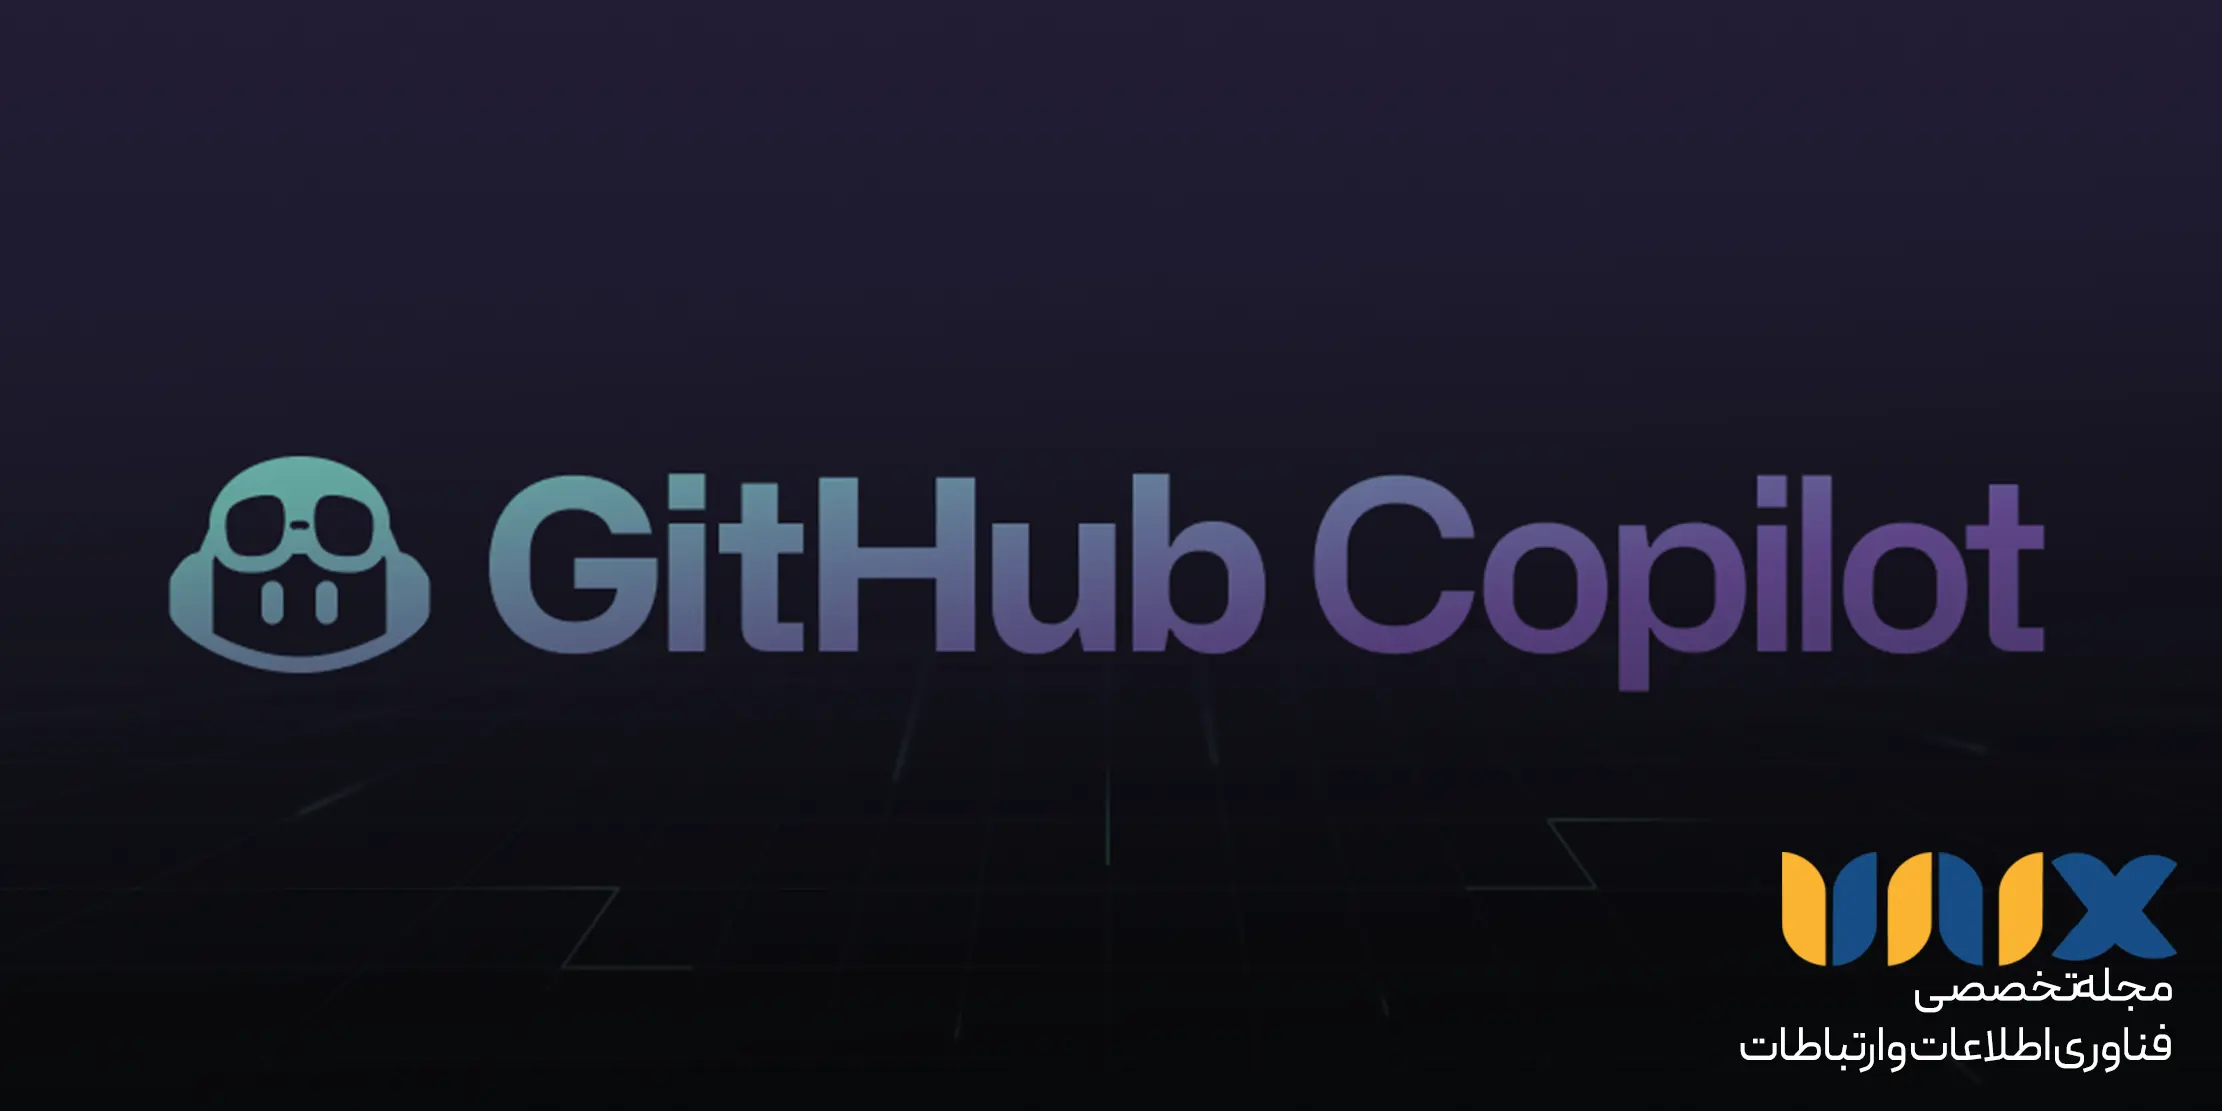 GitHub Copilot X